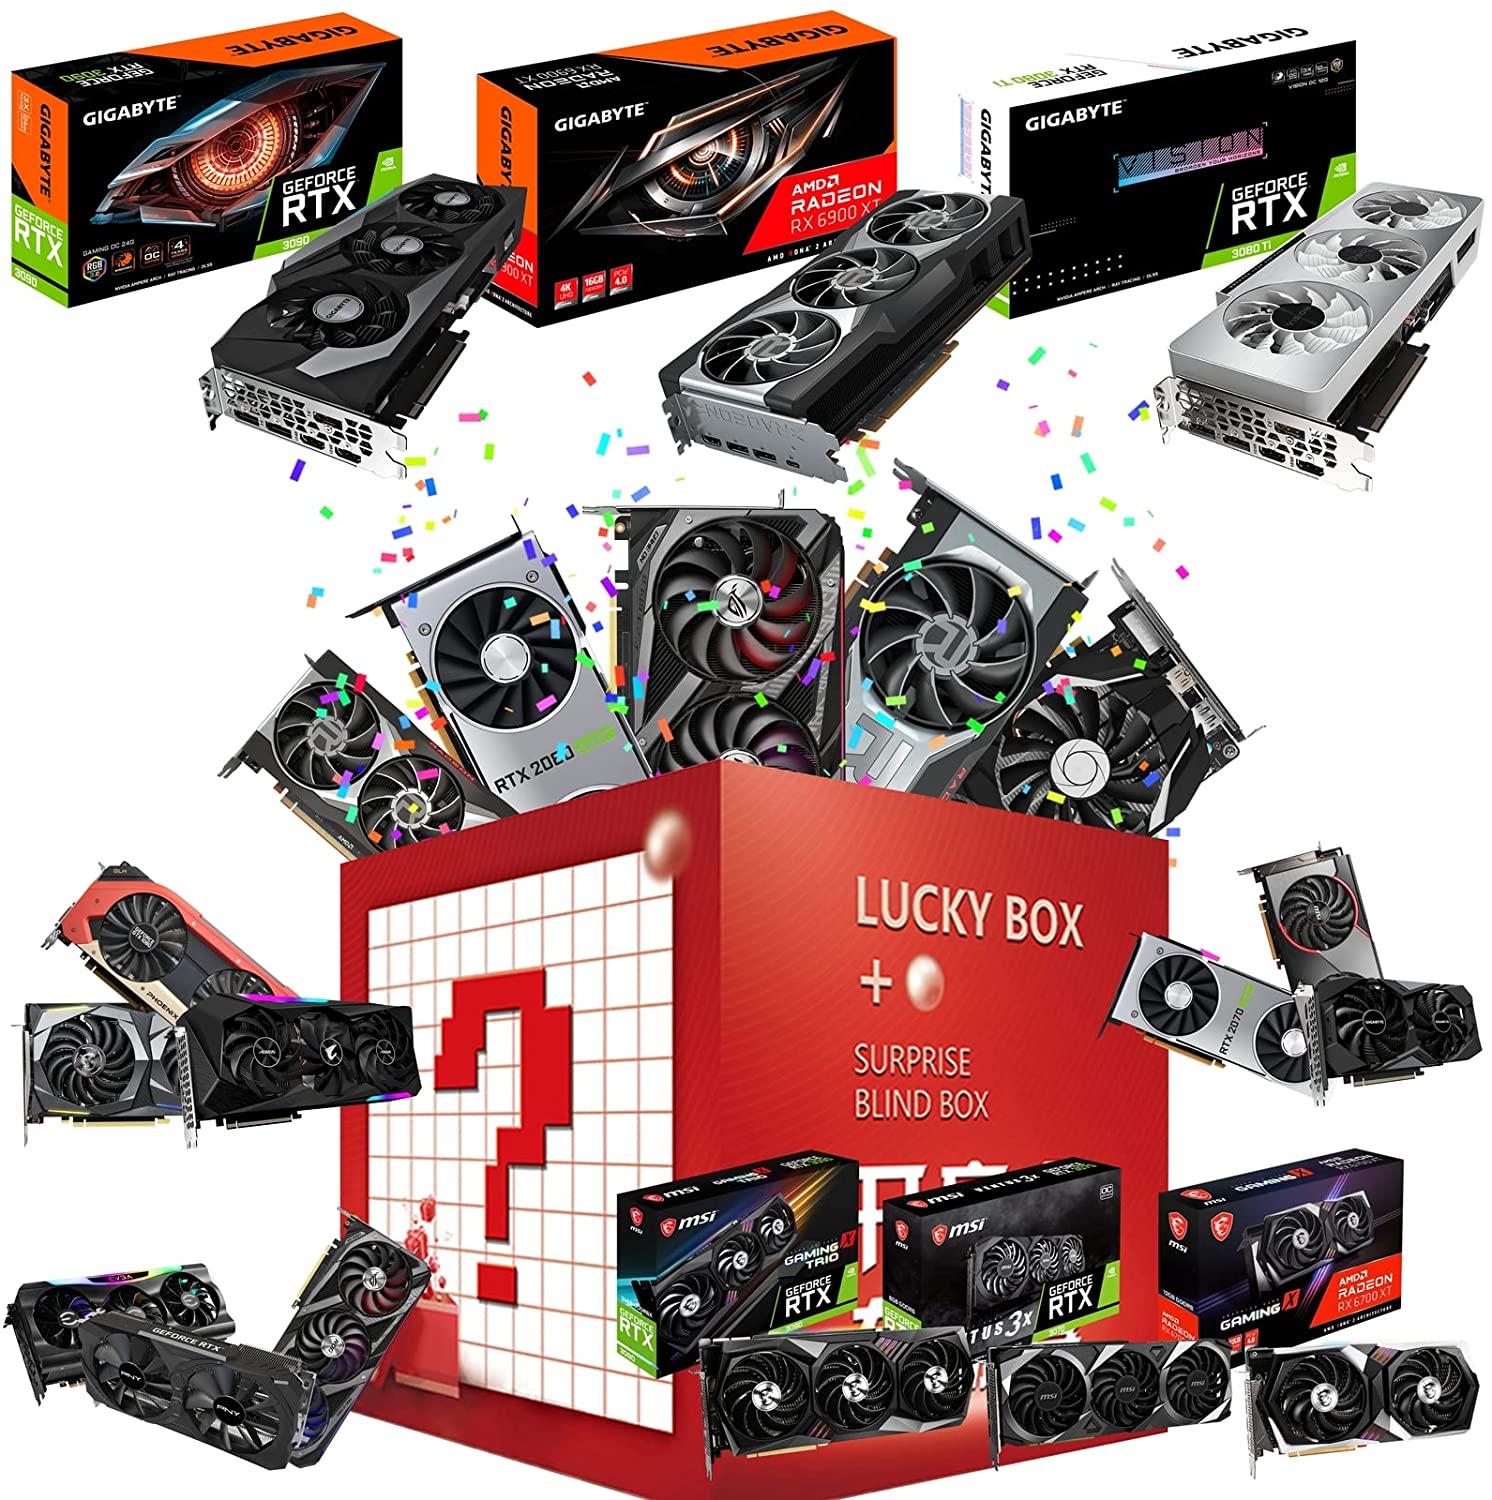 GeForce RTX 3060 Ti Gaming Graphics Card 8GB GDDR6,RTX 3090 12GB GDDR6 Video Card RTX 3080, RTX 3070,RX 6600 XT,GTX 1060, GTX 1660 Super 6GB,GTX 1650 OC 4GB от DHgate WW